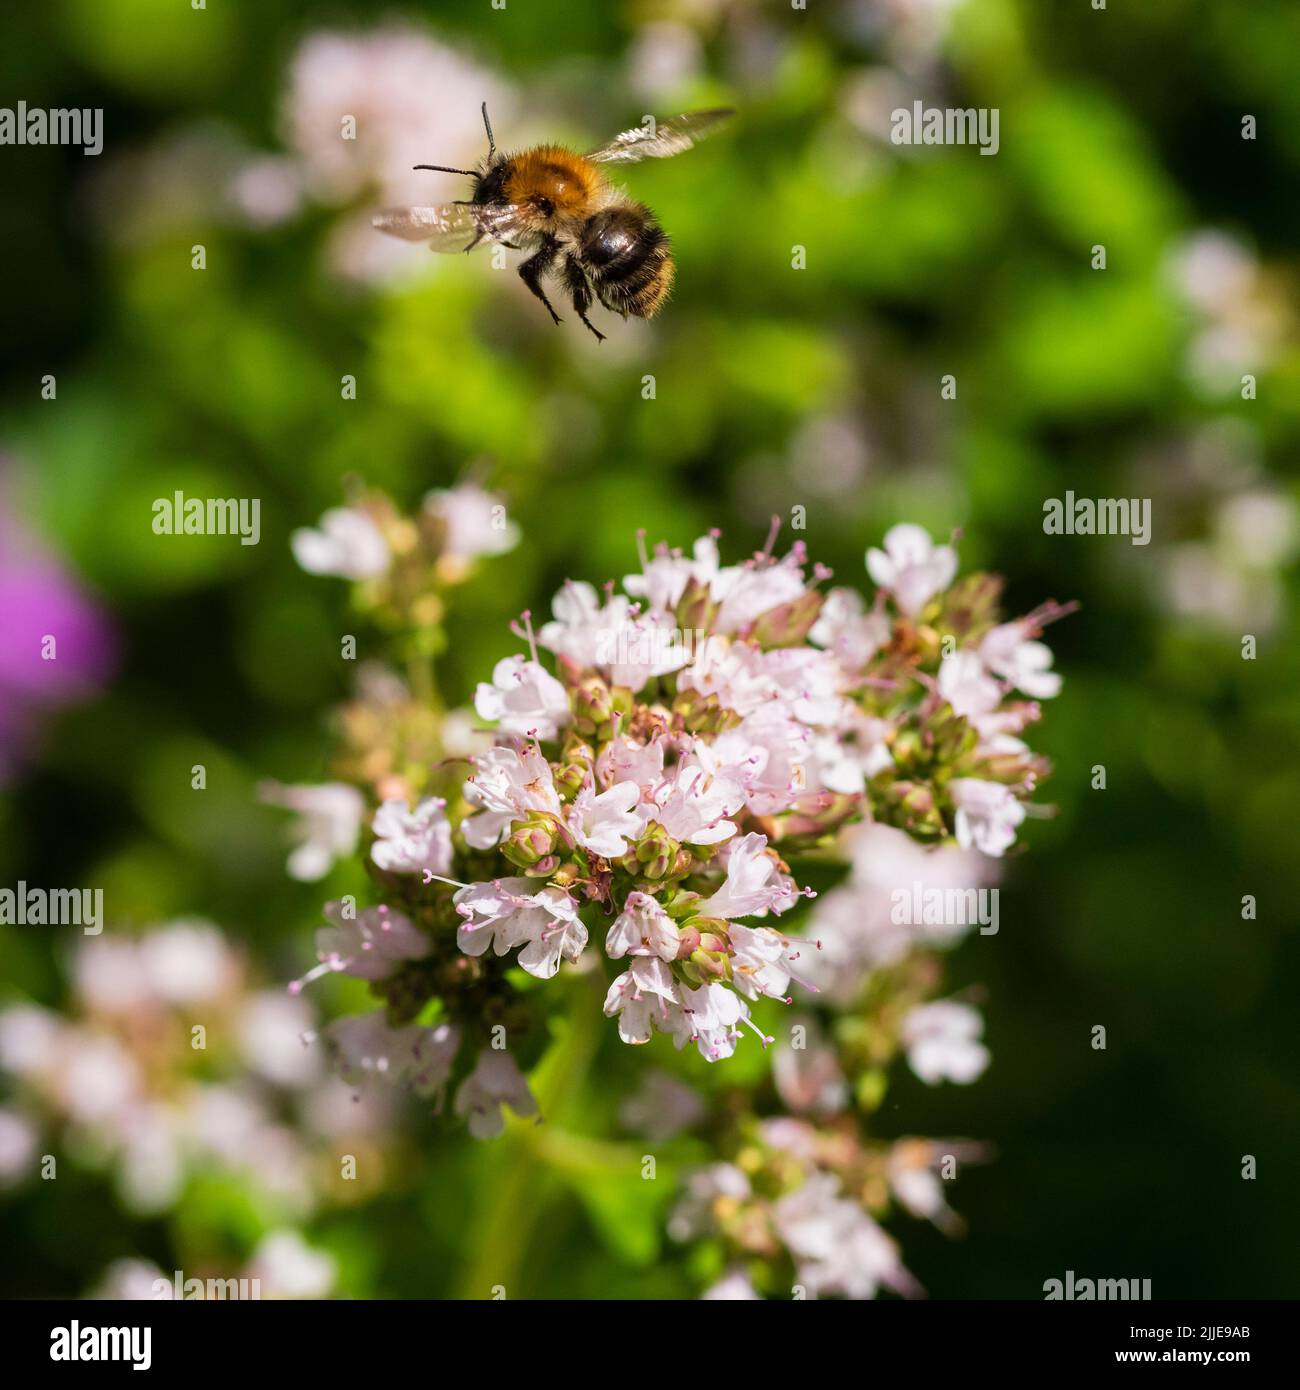 Gemeine Carderbiene, Bombus pascuorum, im Flug zwischen Blütenköpfen aus goldenem Majoran, Origanum vulgare 'Aureum' in einem britischen Garten Stockfoto